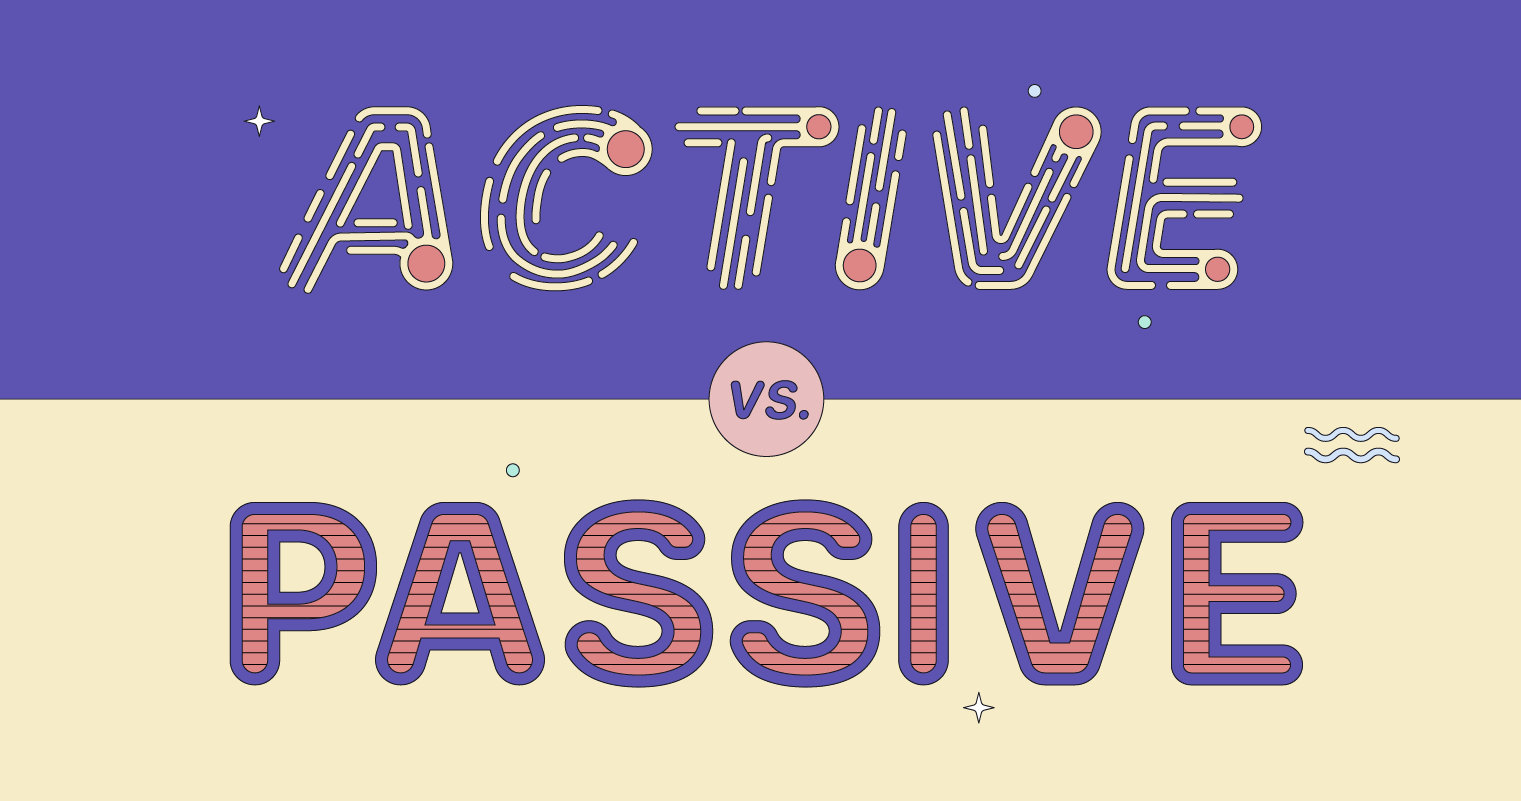 Active and Passive Voice - Class 8 - Quizizz